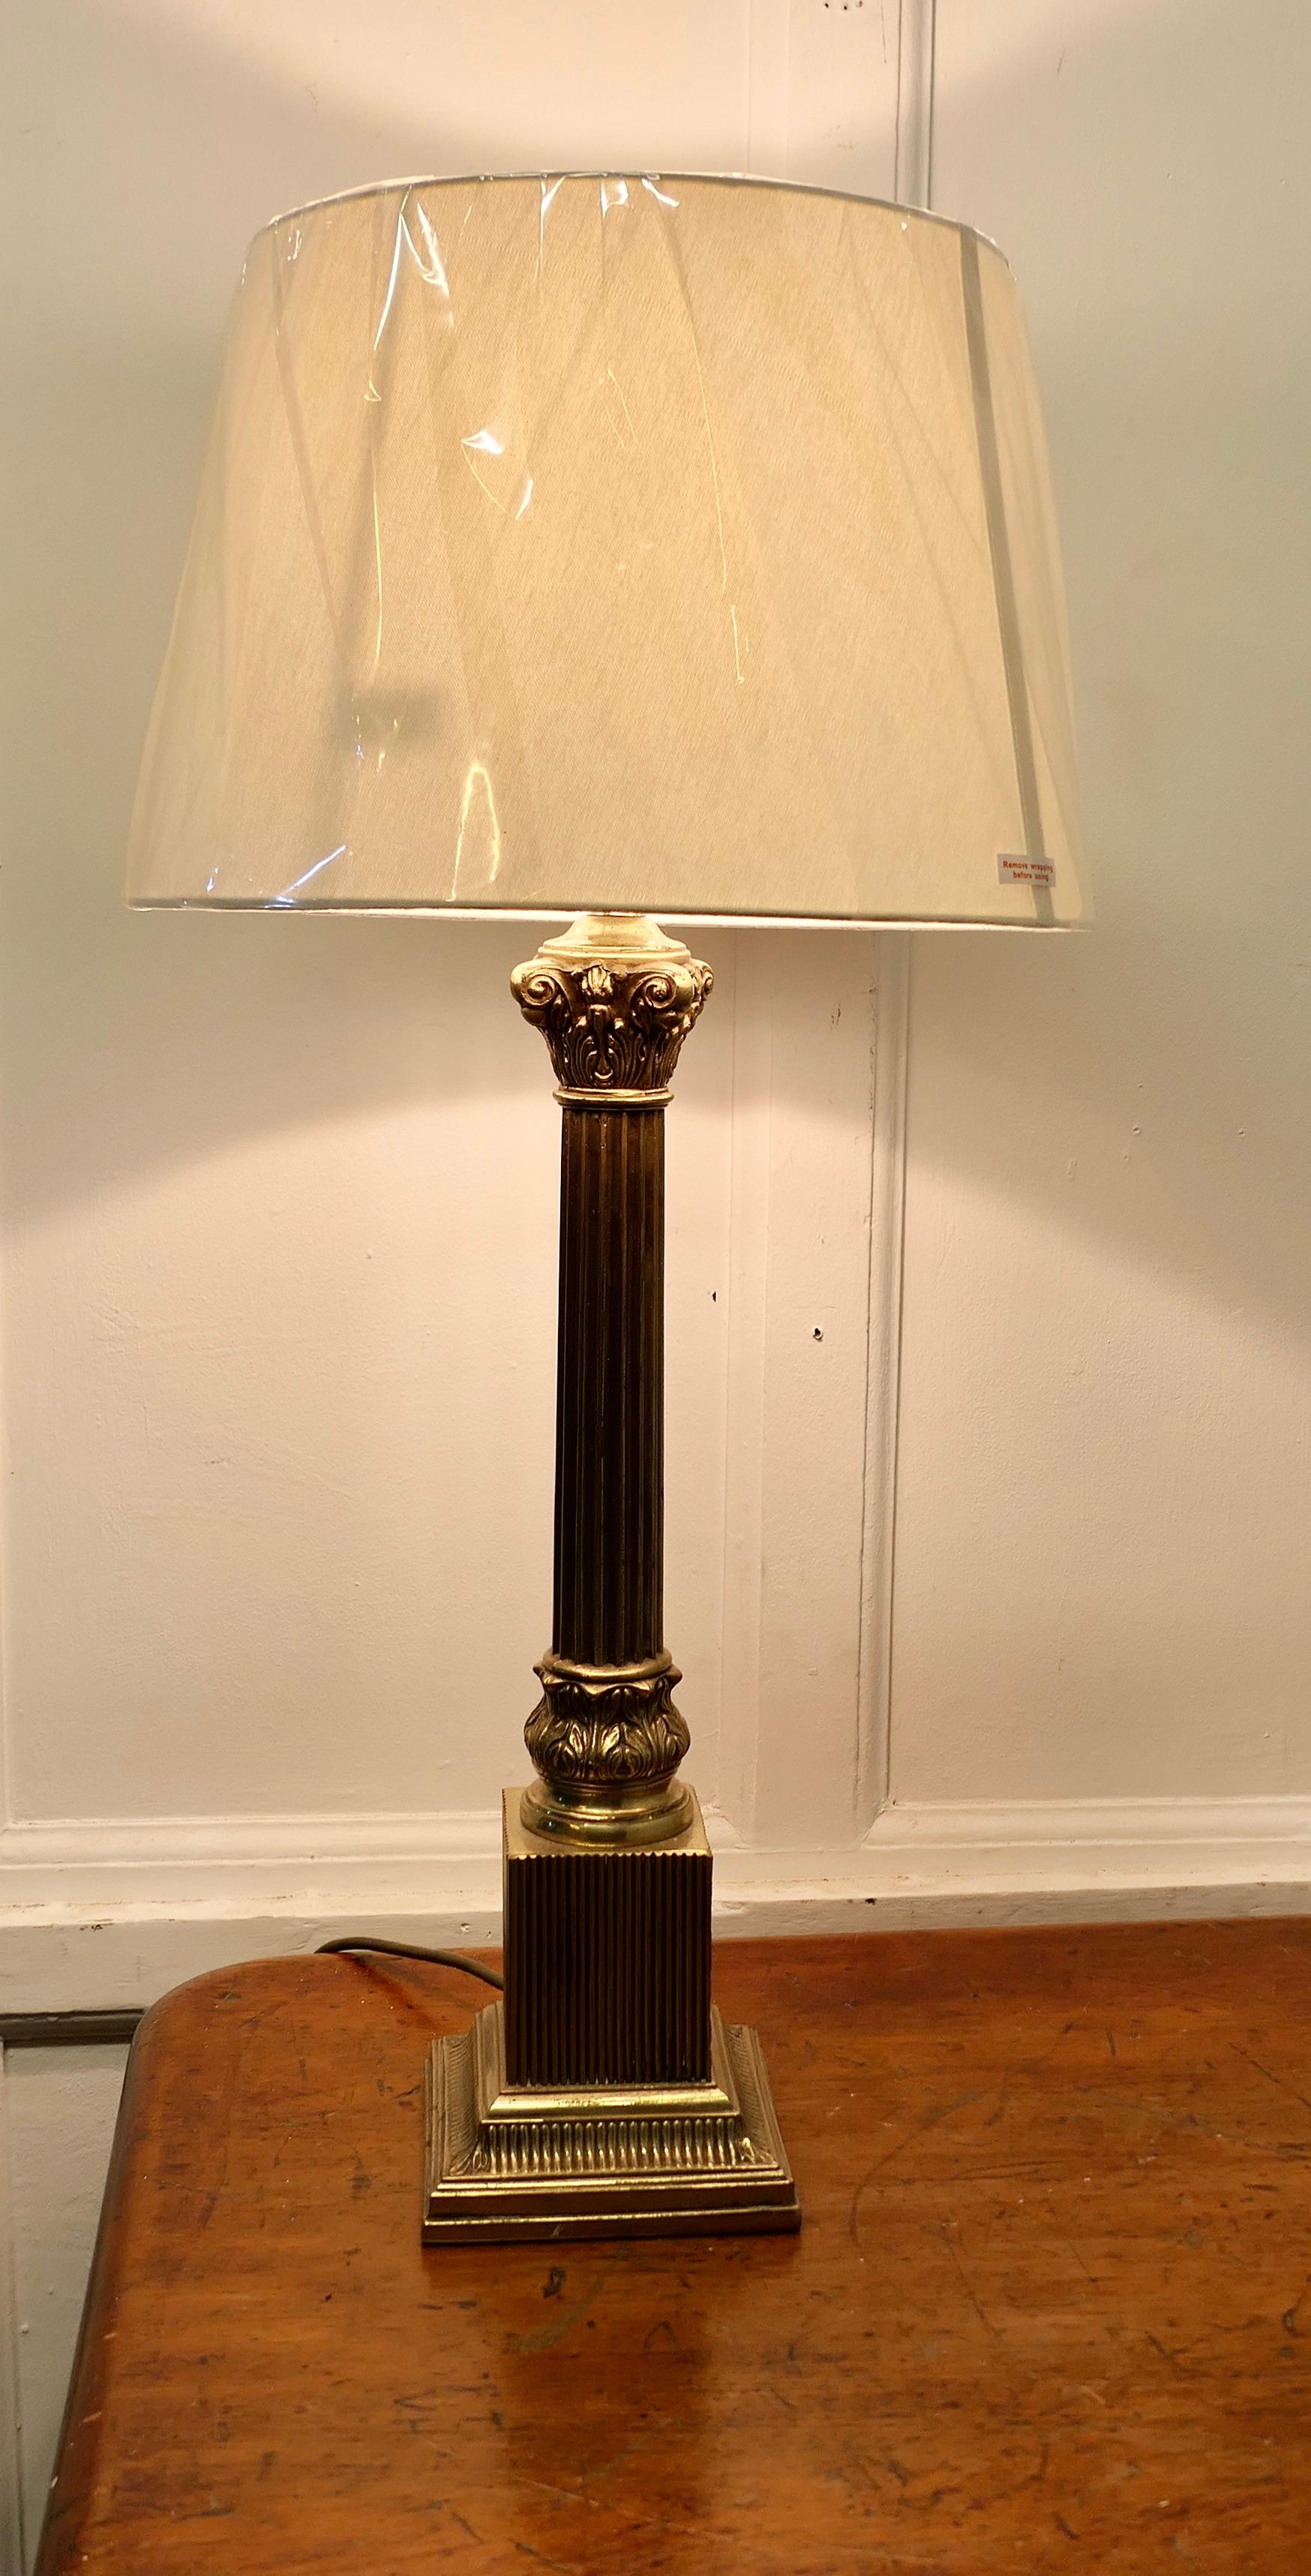 Hohe korinthische Säule aus Messing als Tischlampe  

Dies ist eine sehr attraktive Lampe hat es eine schwere einzelne korinthischen Stil Spalte auf einem abgestuften rechteckigen Sockel gesetzt, es kommt mit einem neutralen farbigen Leinen